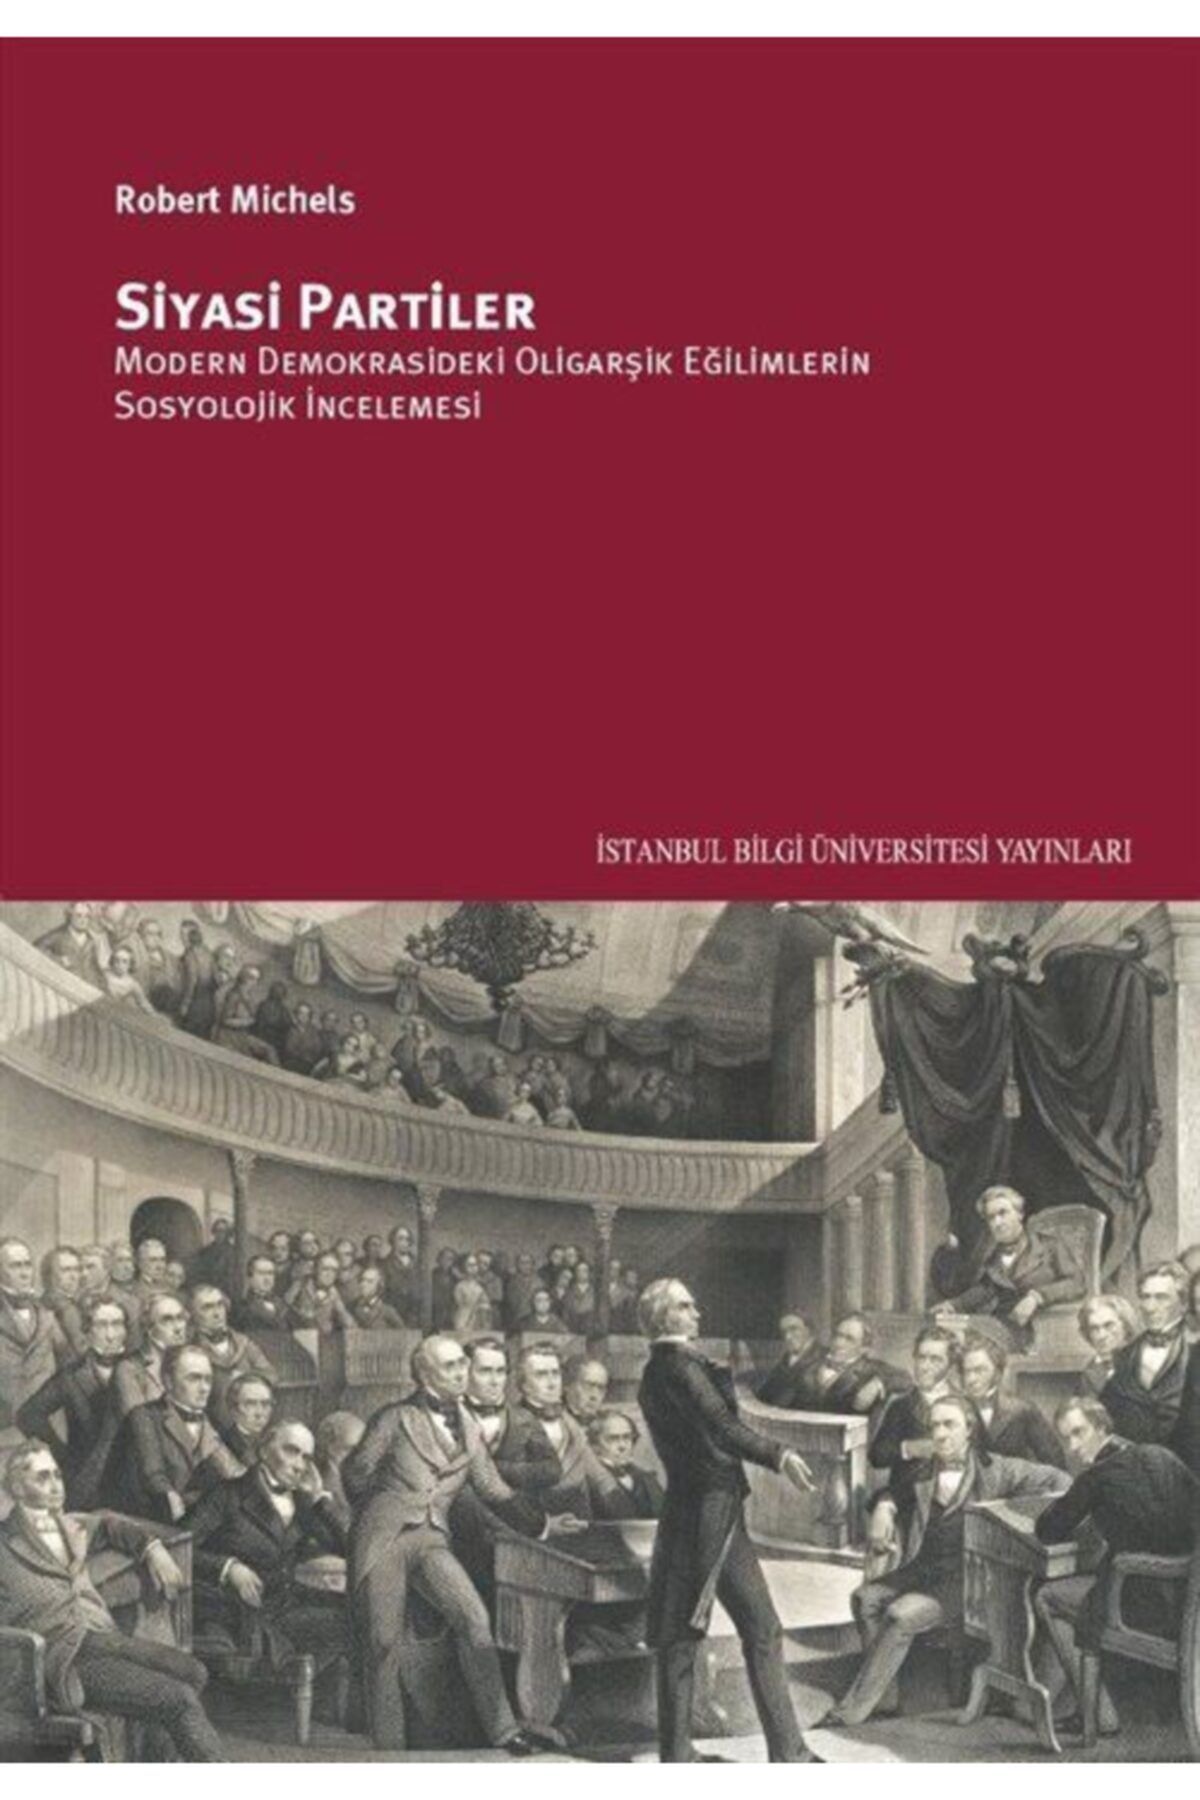 İstanbul Bilgi Üniversitesi Yayınları Siyasi Partiler: Modern Demokrasideki Oligarşik Eğilimlerin Sosyolojik Incelemesi